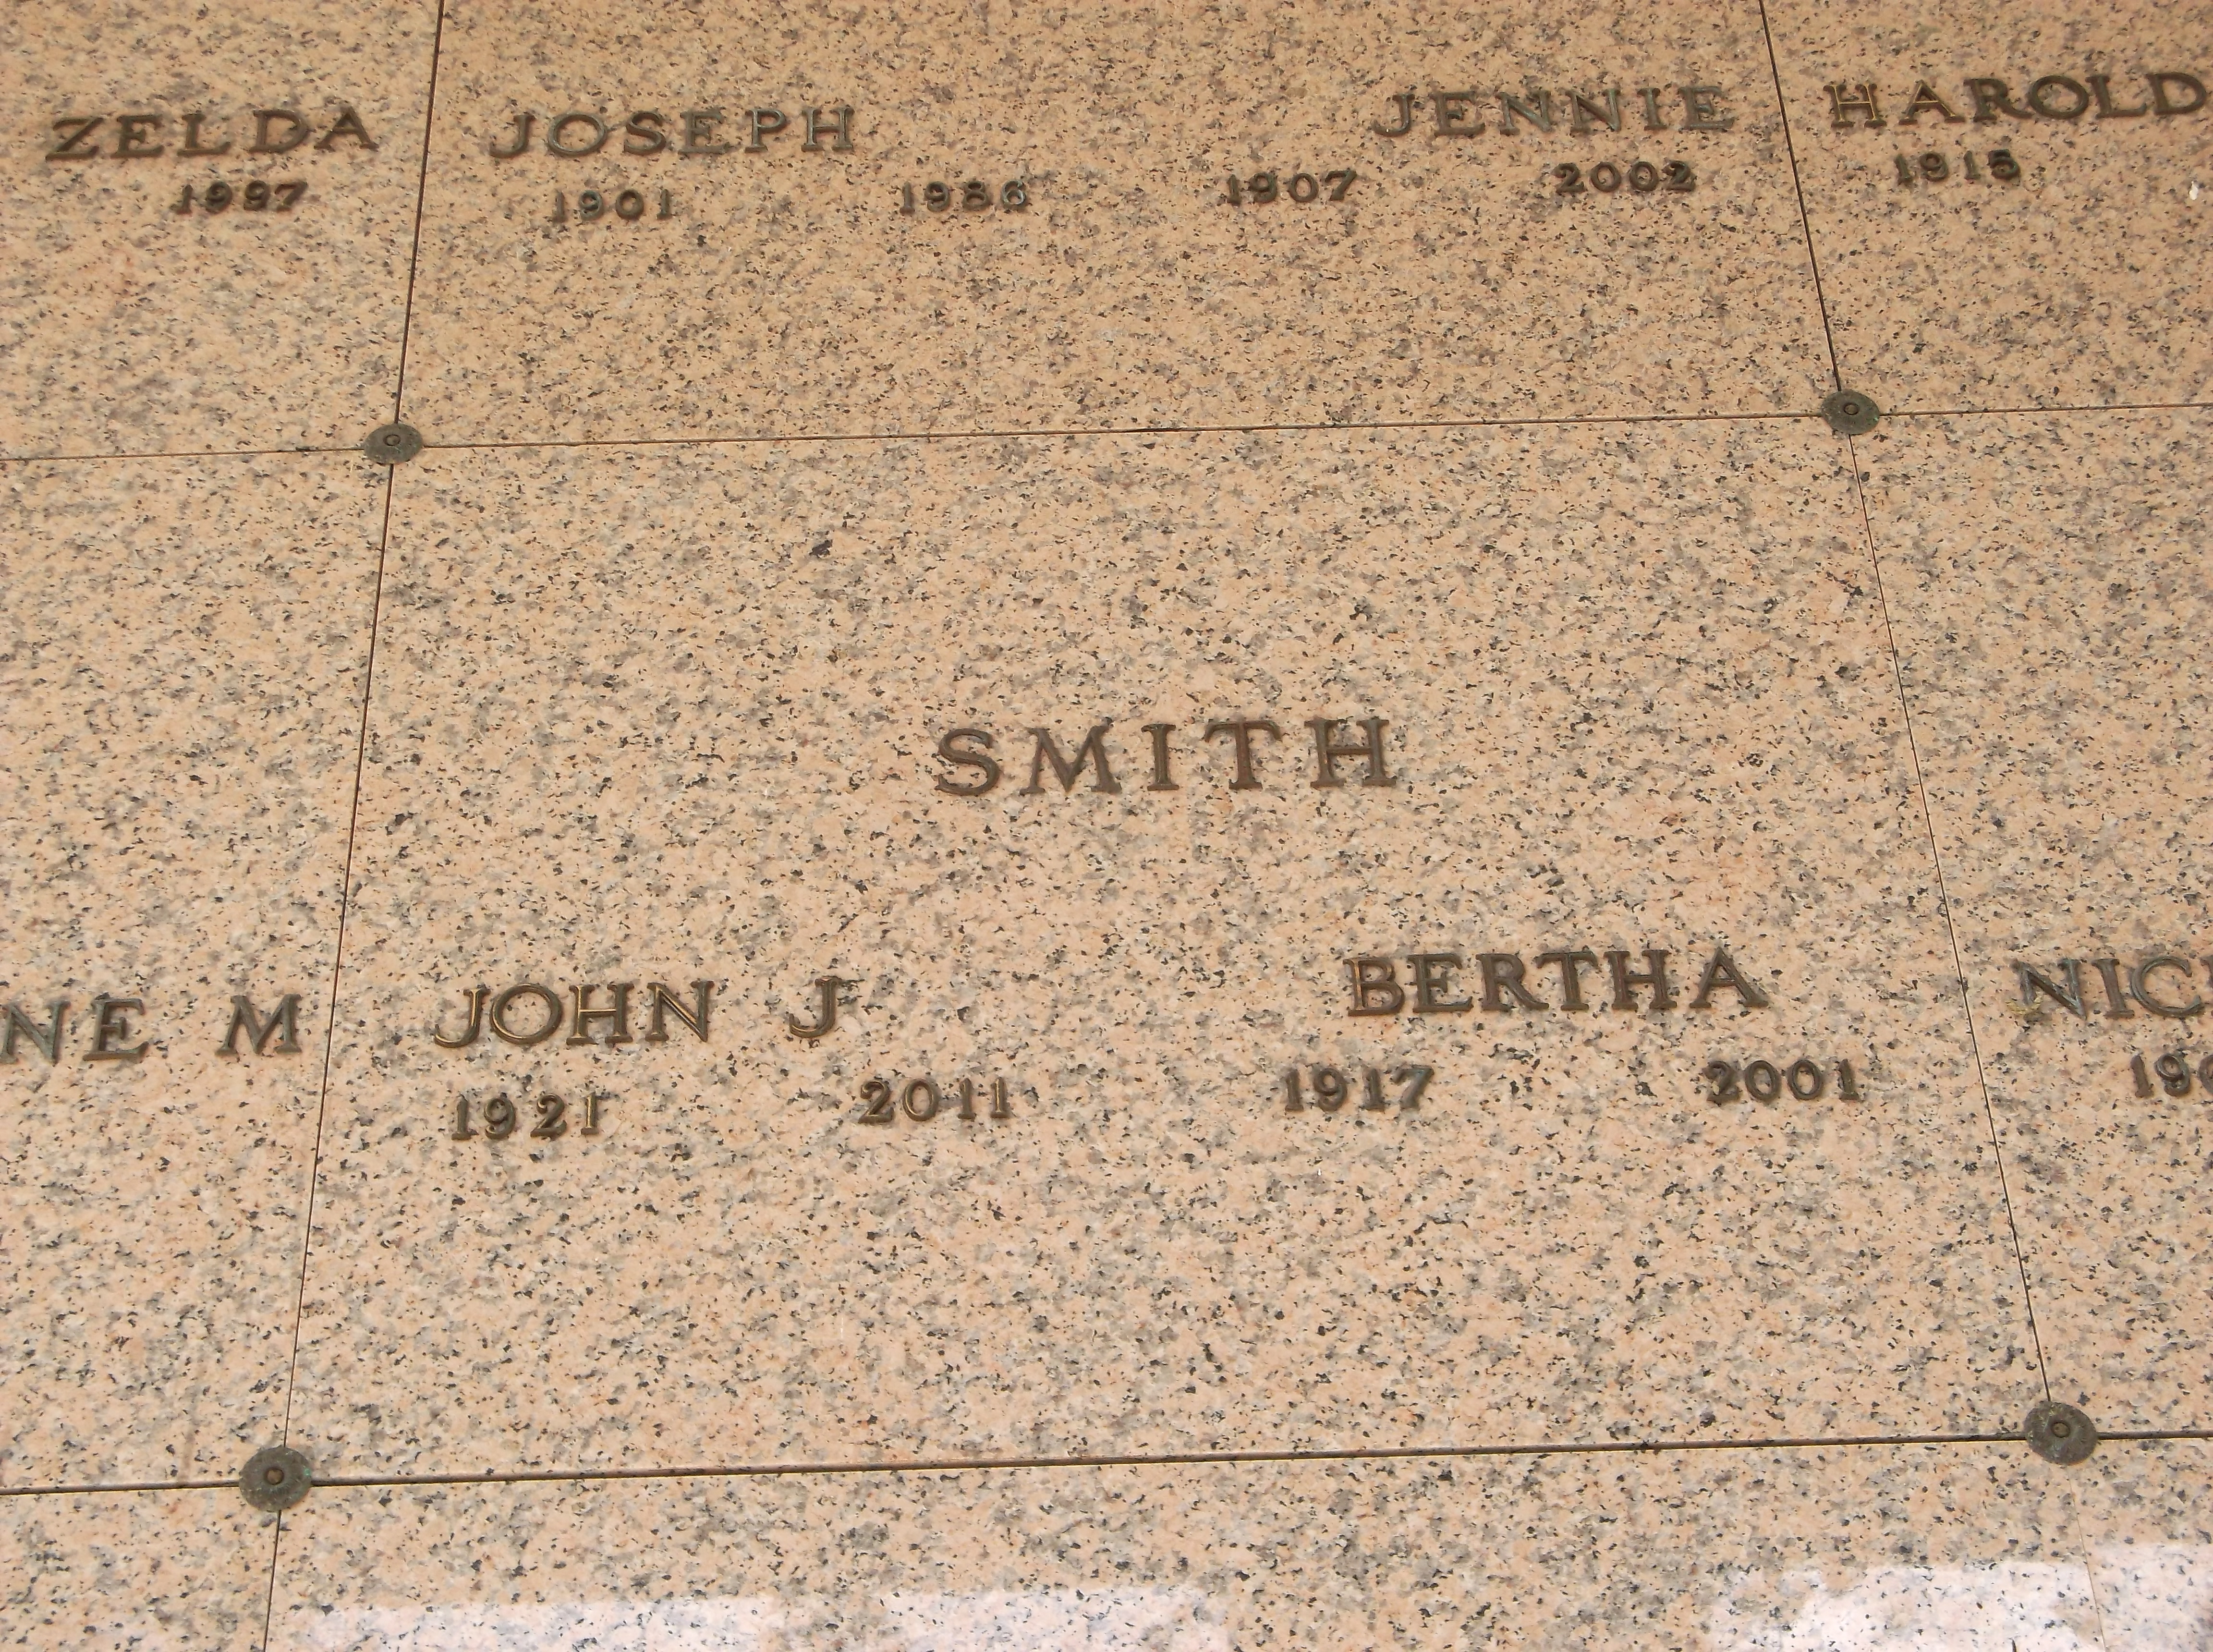 John J Smith